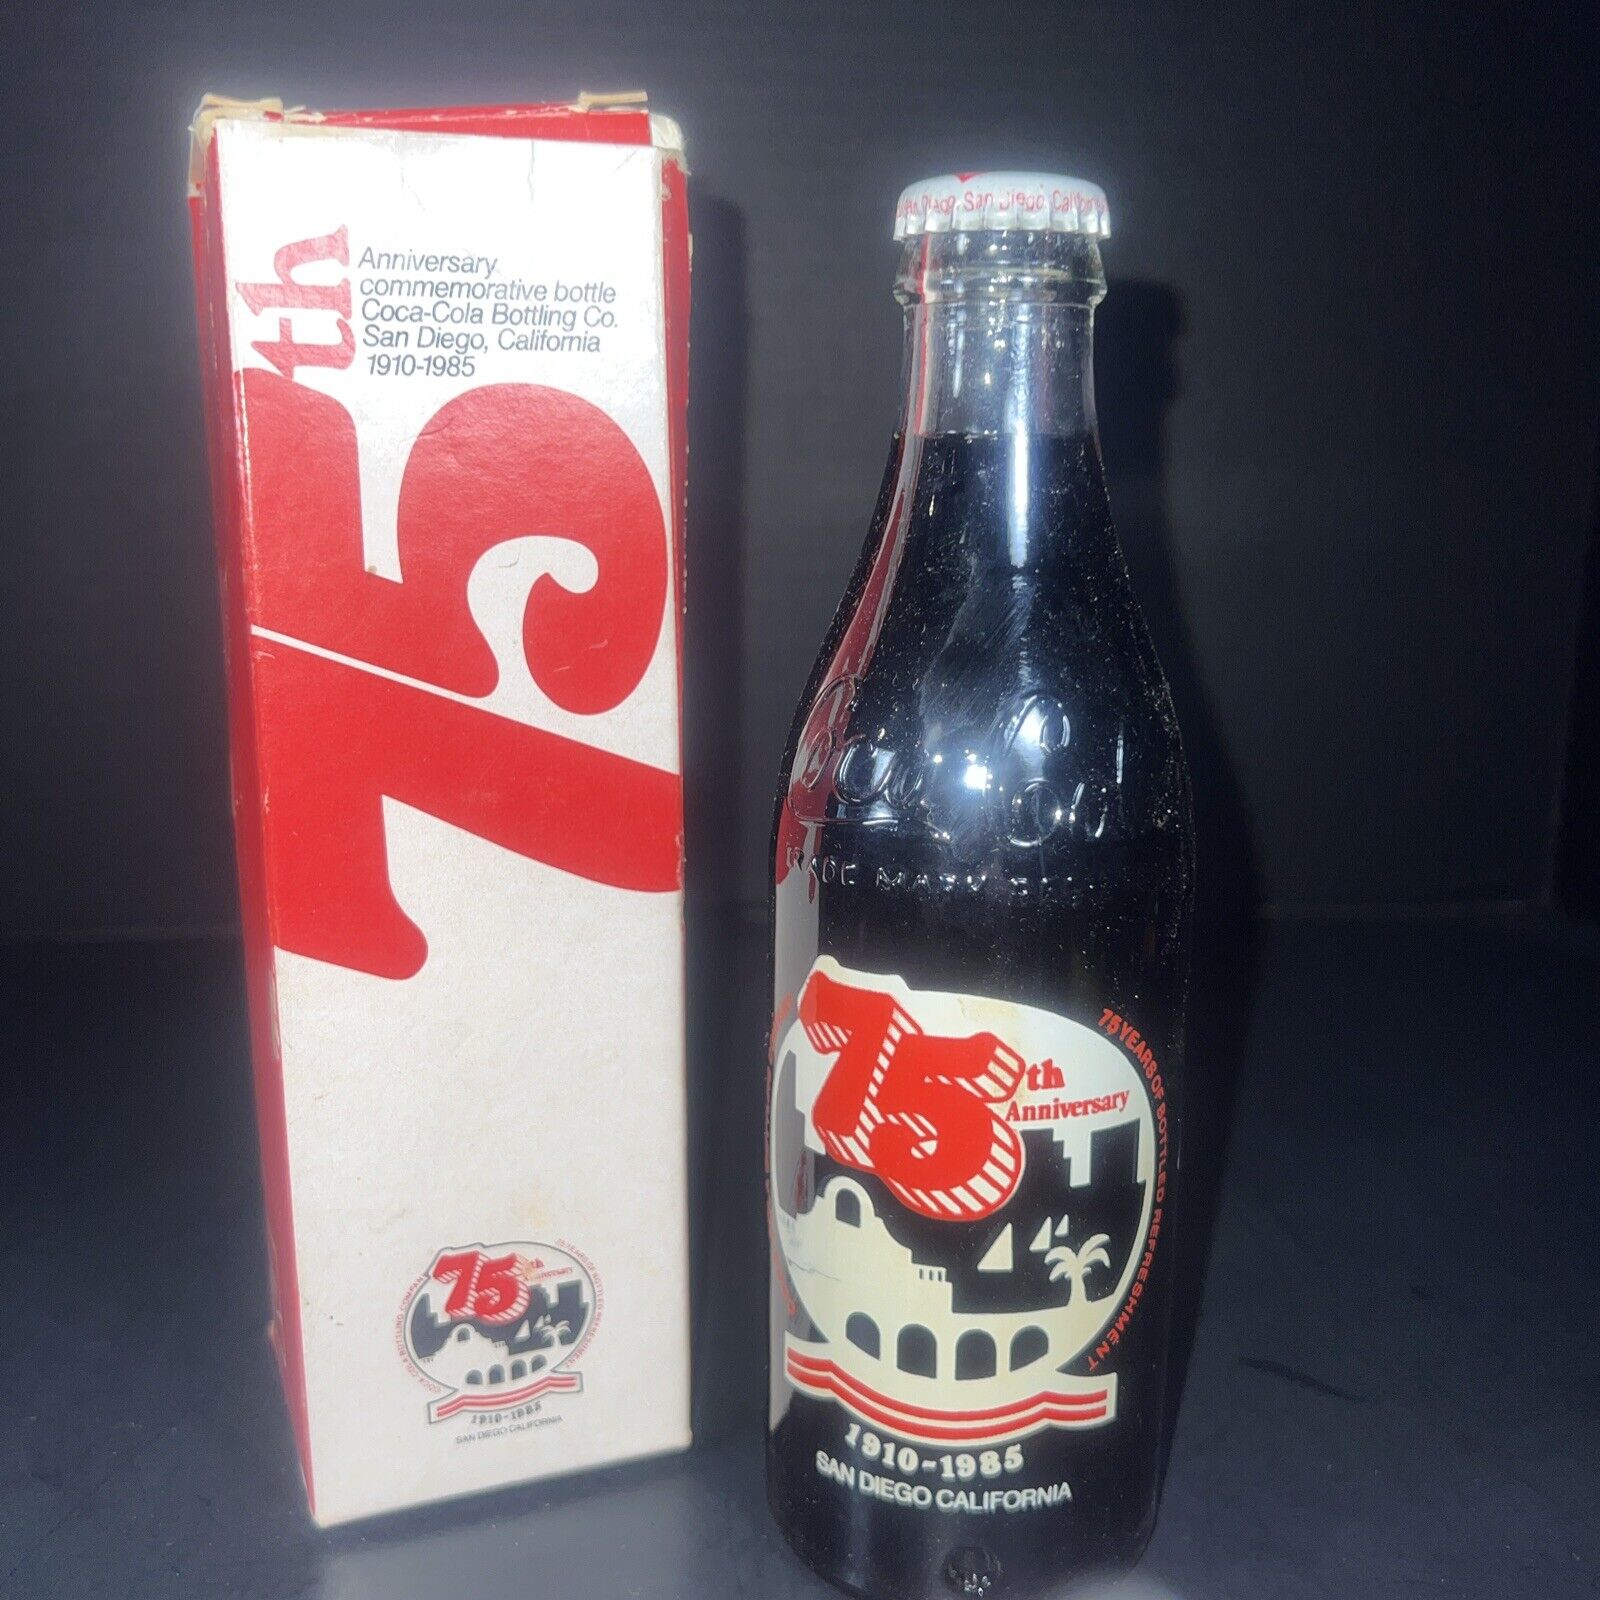 RARE Vintage 75th Anniversary Coca Cola SAN DIEGO COKE BOTTLE 1910-1985 W/ Box.